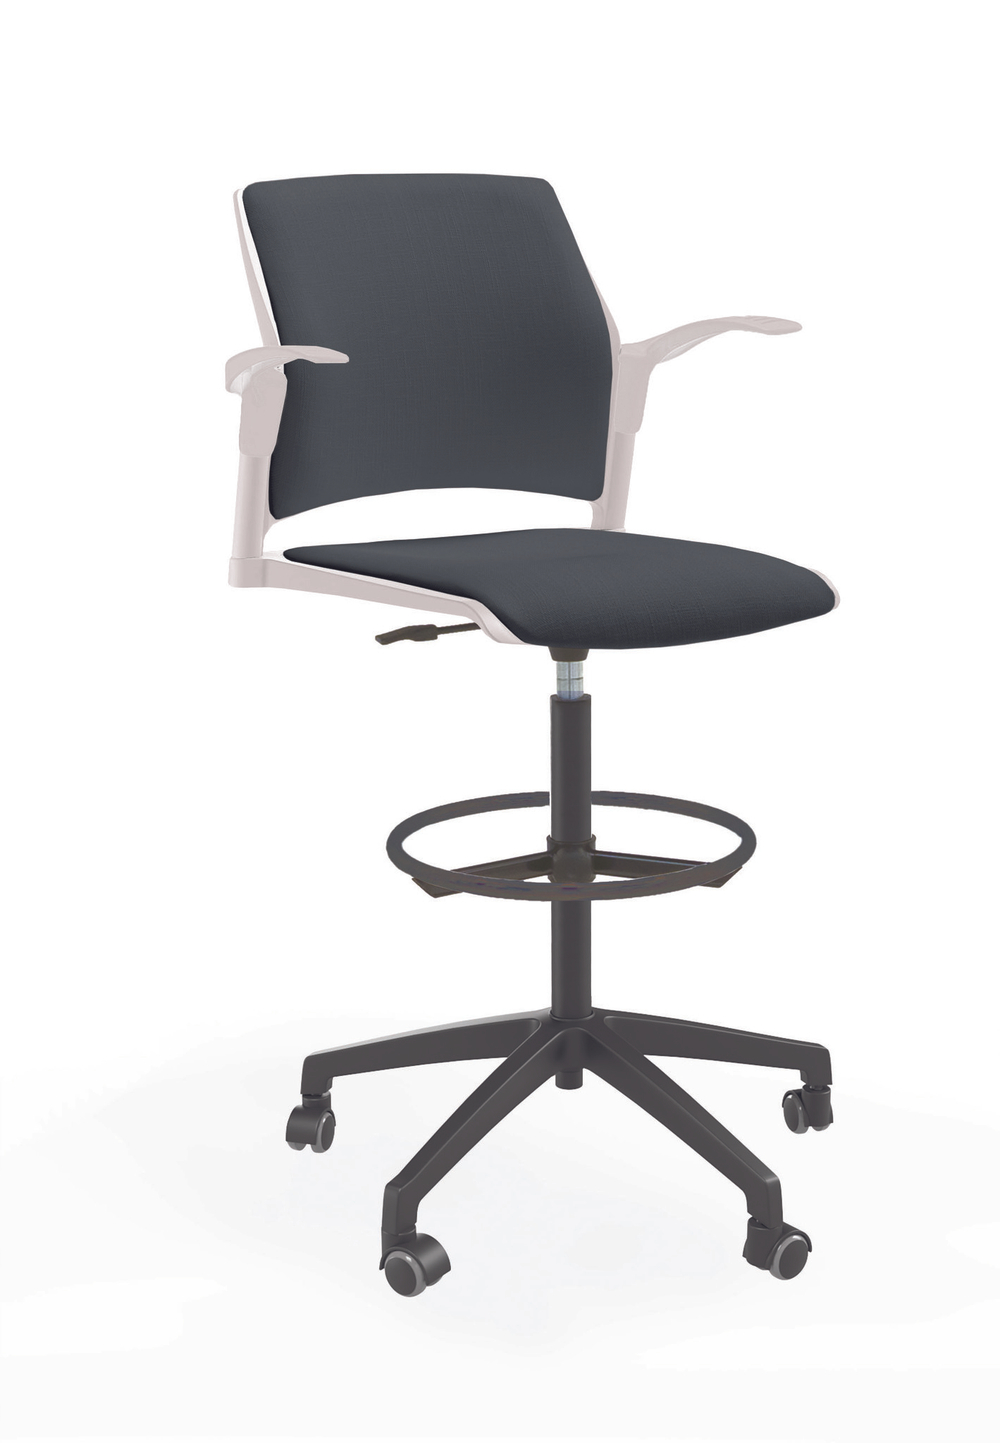 Кресло кассира Rewind каркас черный, пластик белый, база пластиковая чёрная, с открытыми подлокотниками, сидение и спинка антрацит